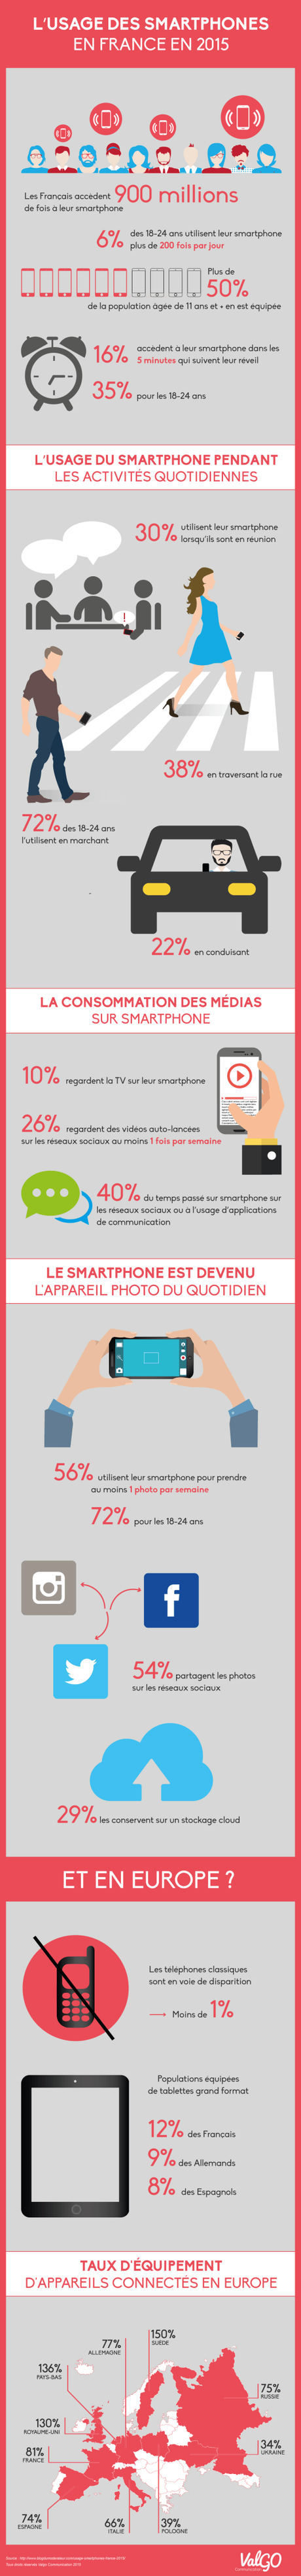 usage-smartphones-France-2015